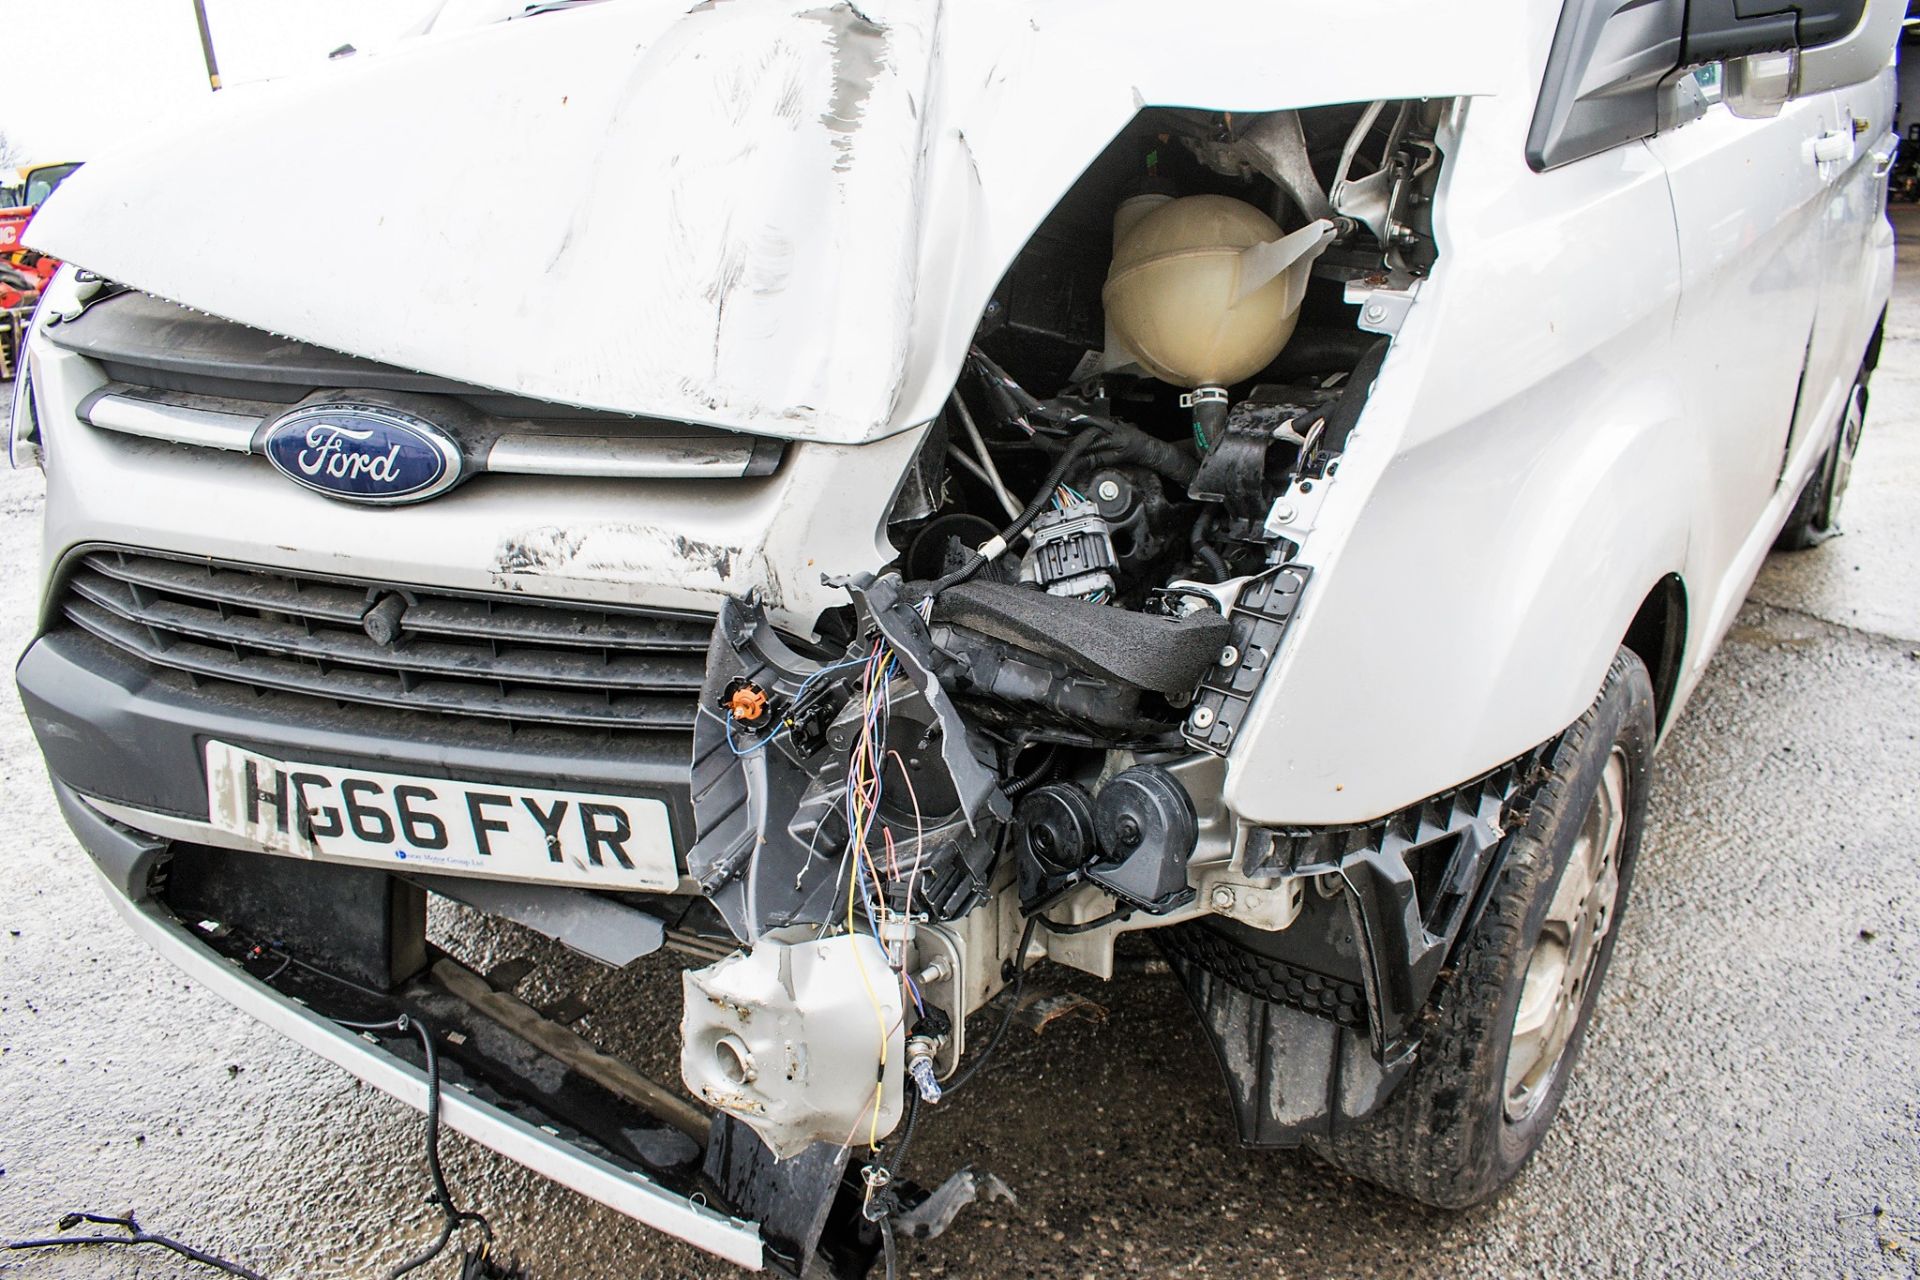 Ford Transit Custom 290 Limited SWB panel van ** Accident Damaged ** Registration Number: HG66 FYR - Image 7 of 14